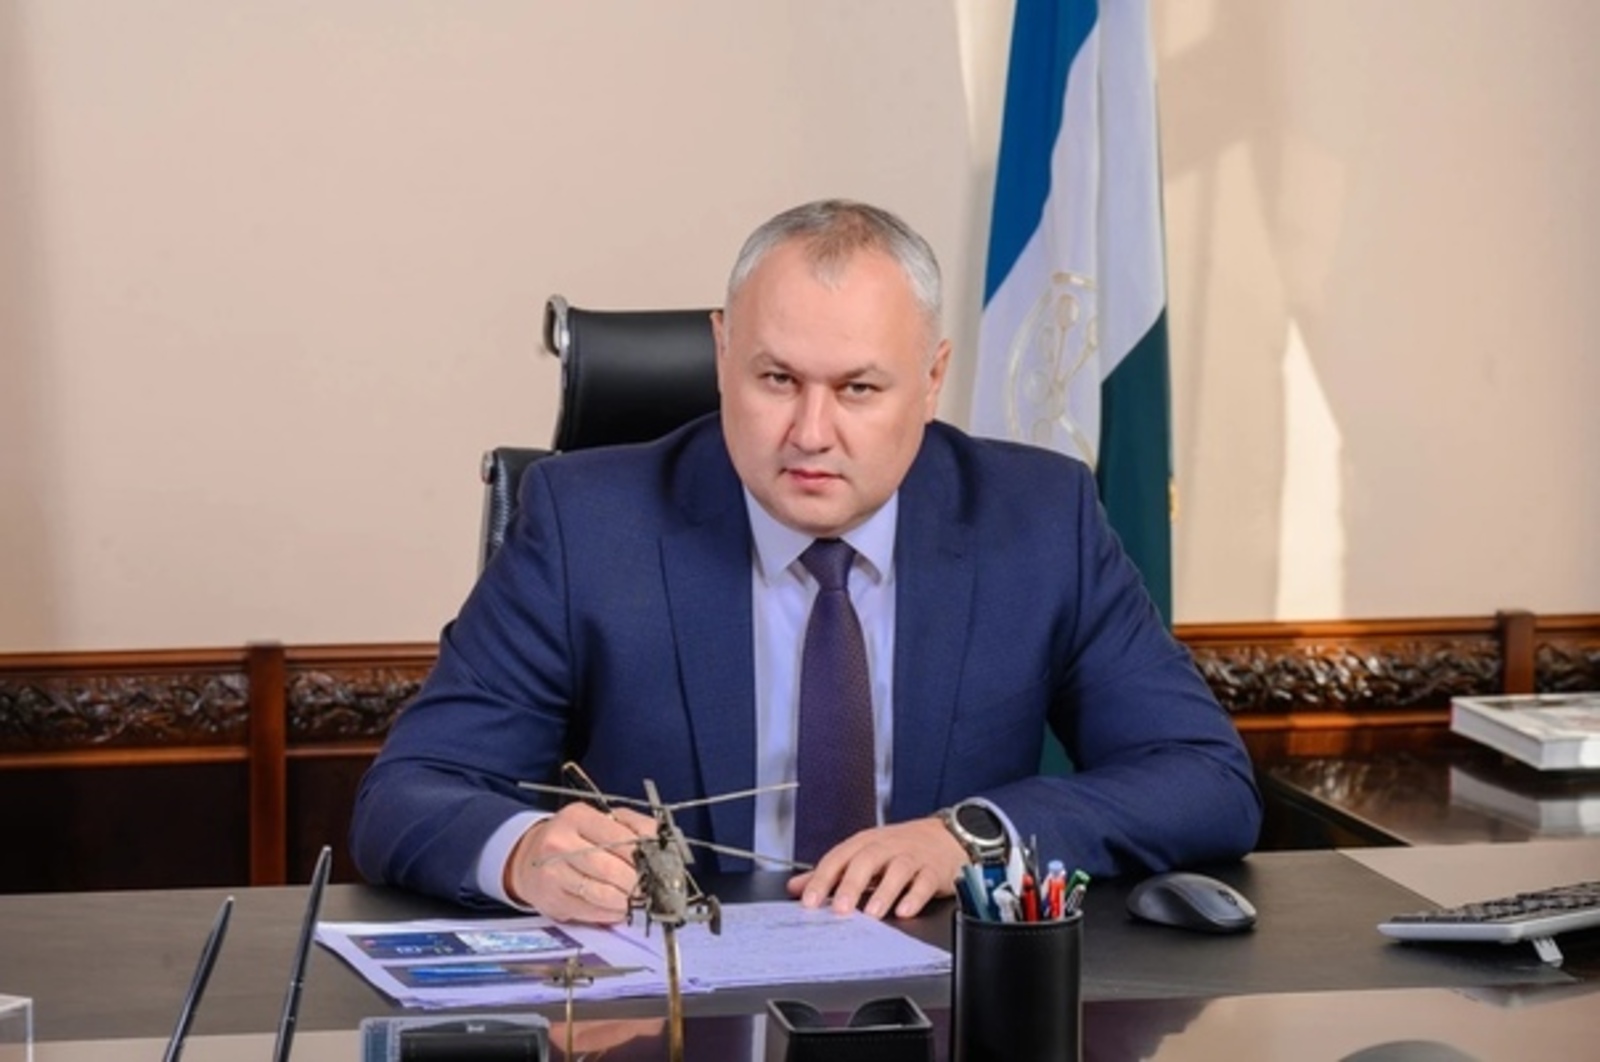 Руководитель минпрома Башкирии рассказал о факторах сохранения устойчивости экономики республики